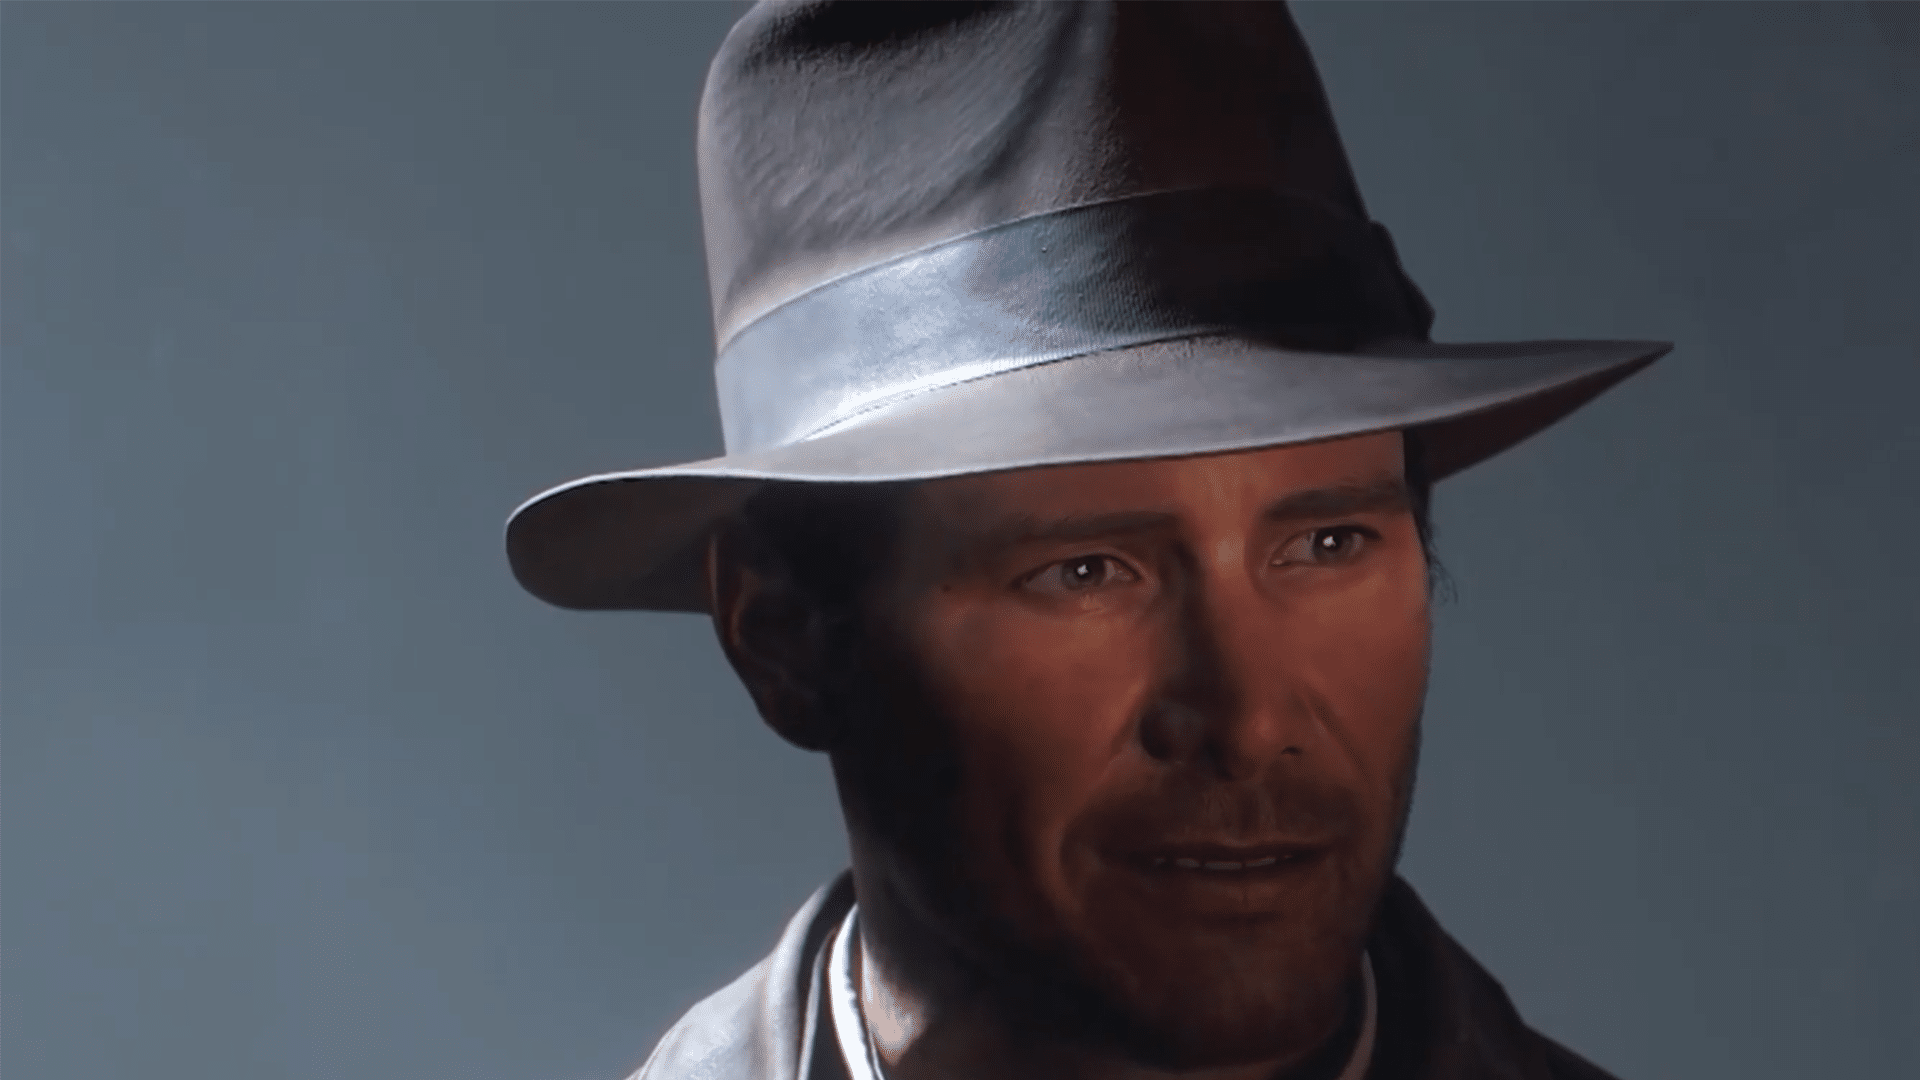 Indiana Jones und der Große Kreis